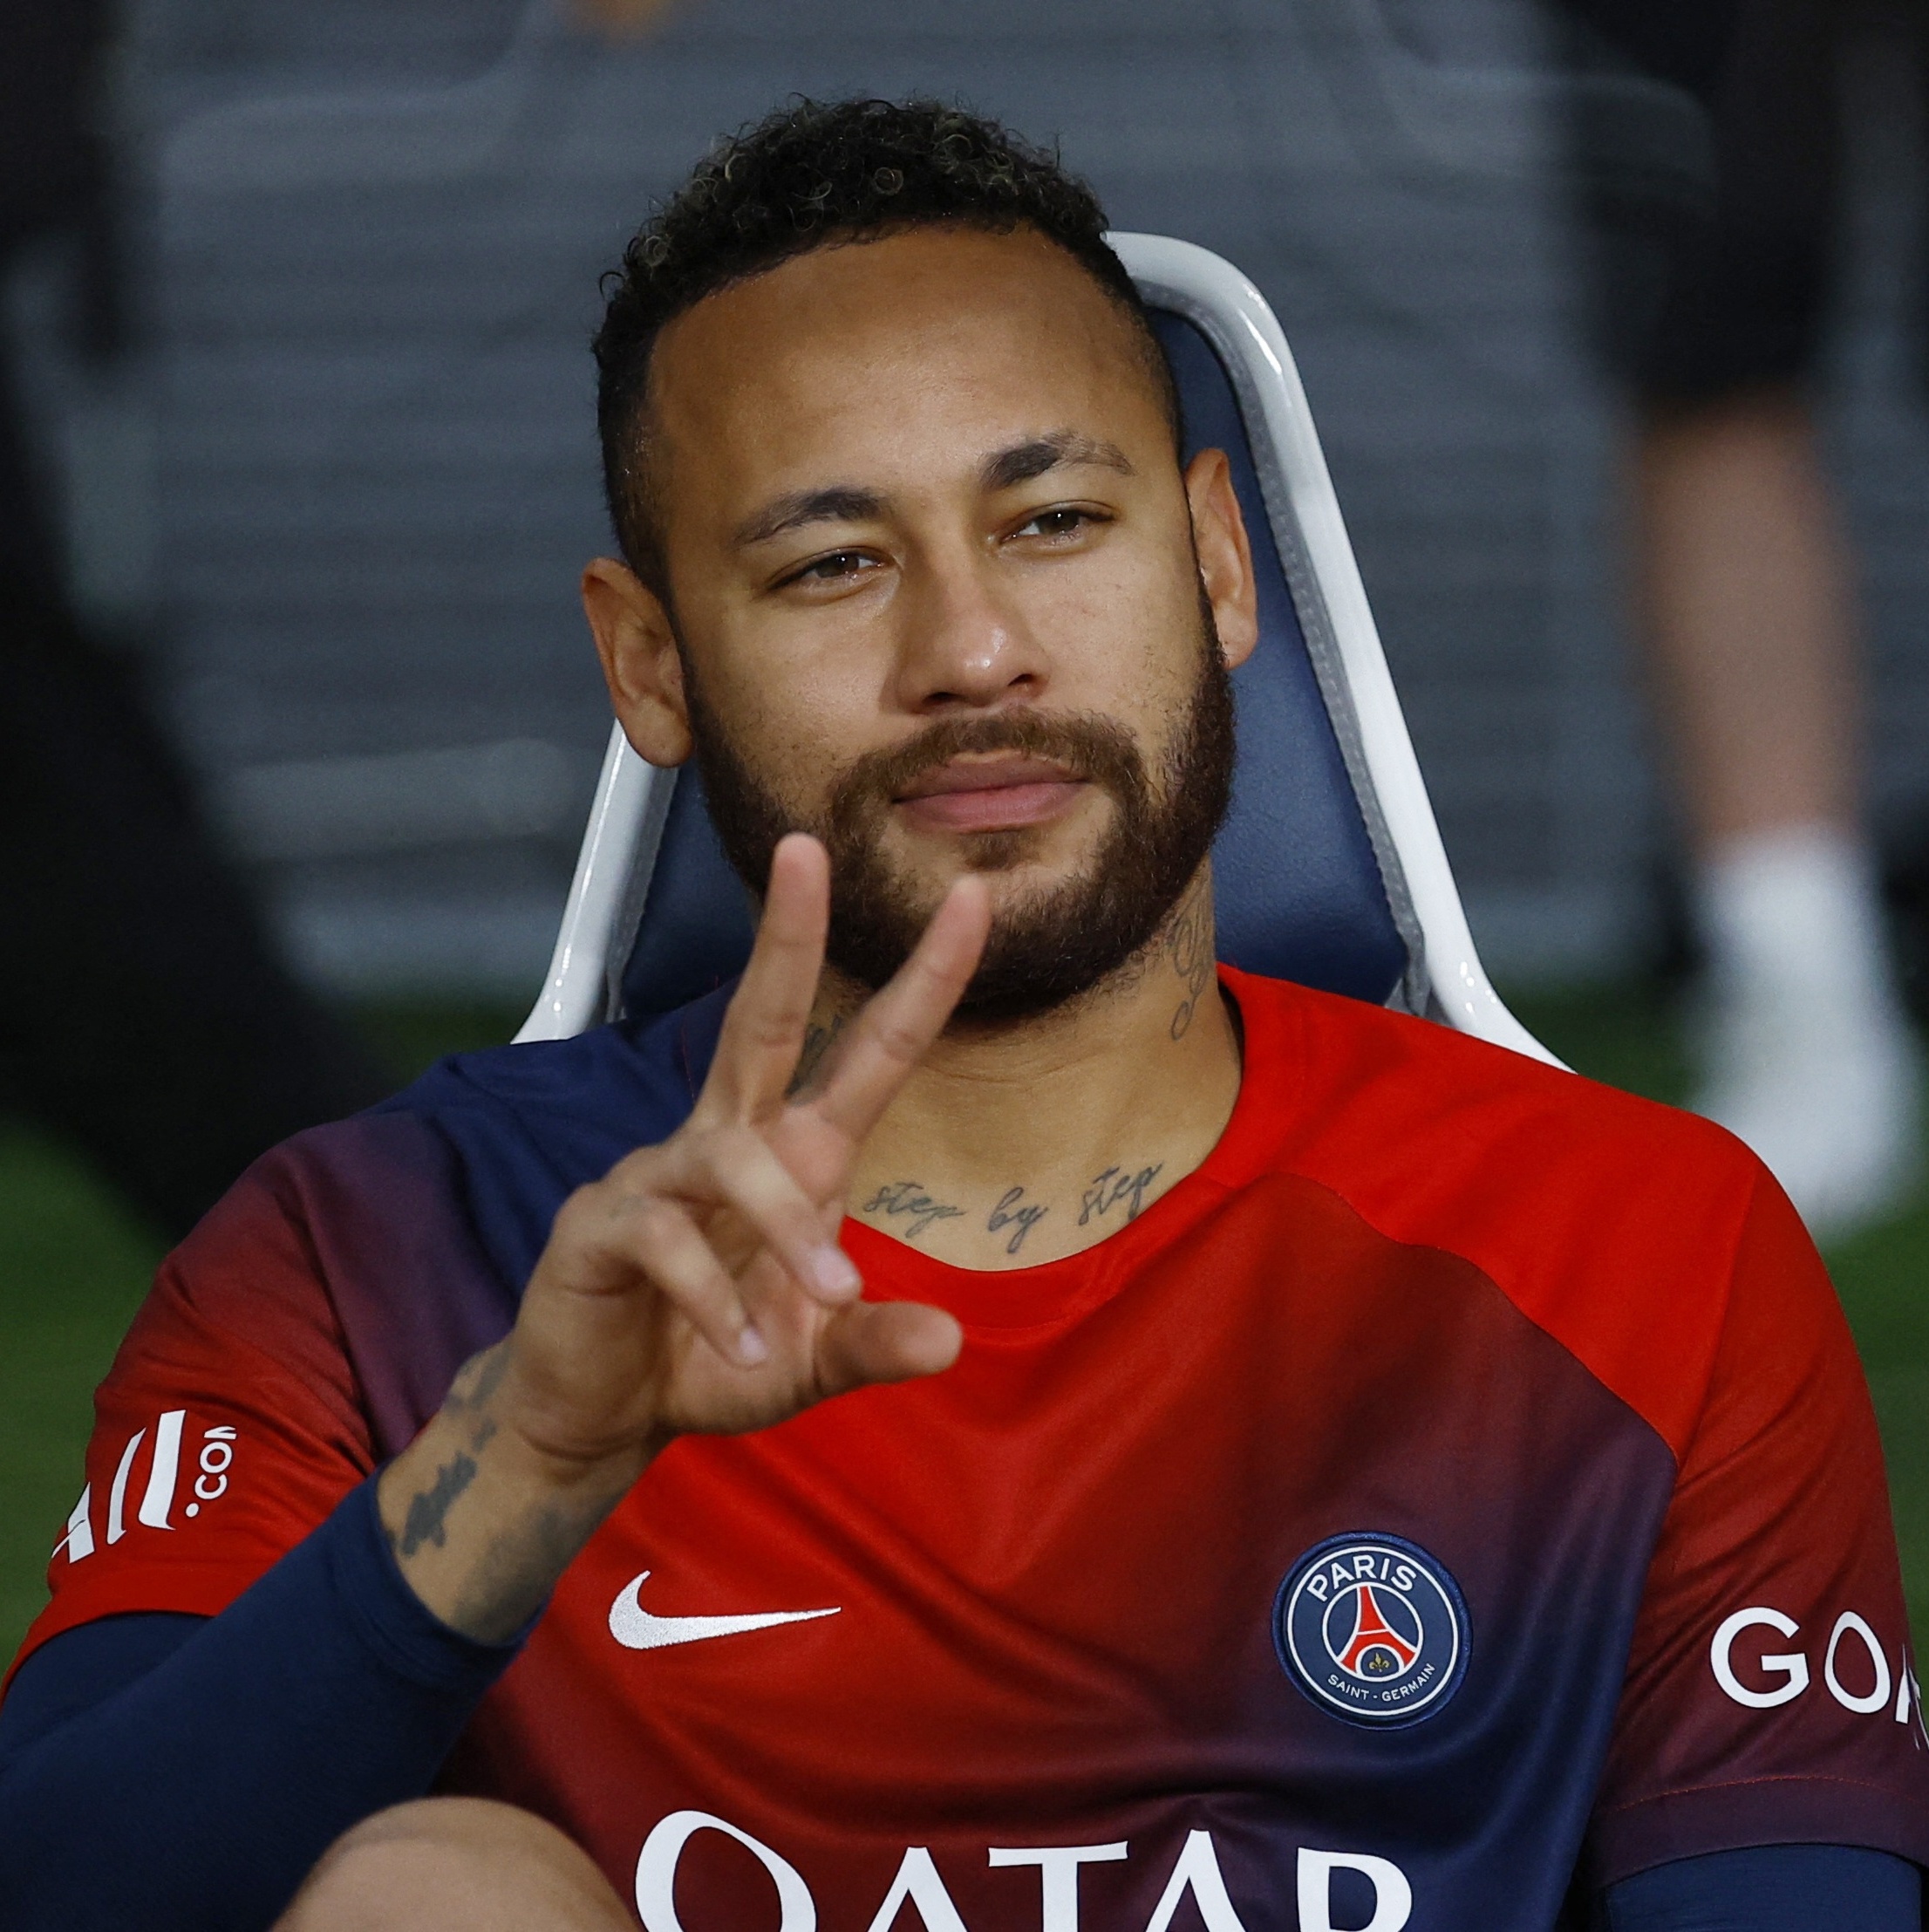 Futebol árabe: os carros que Neymar pode comprar por dia